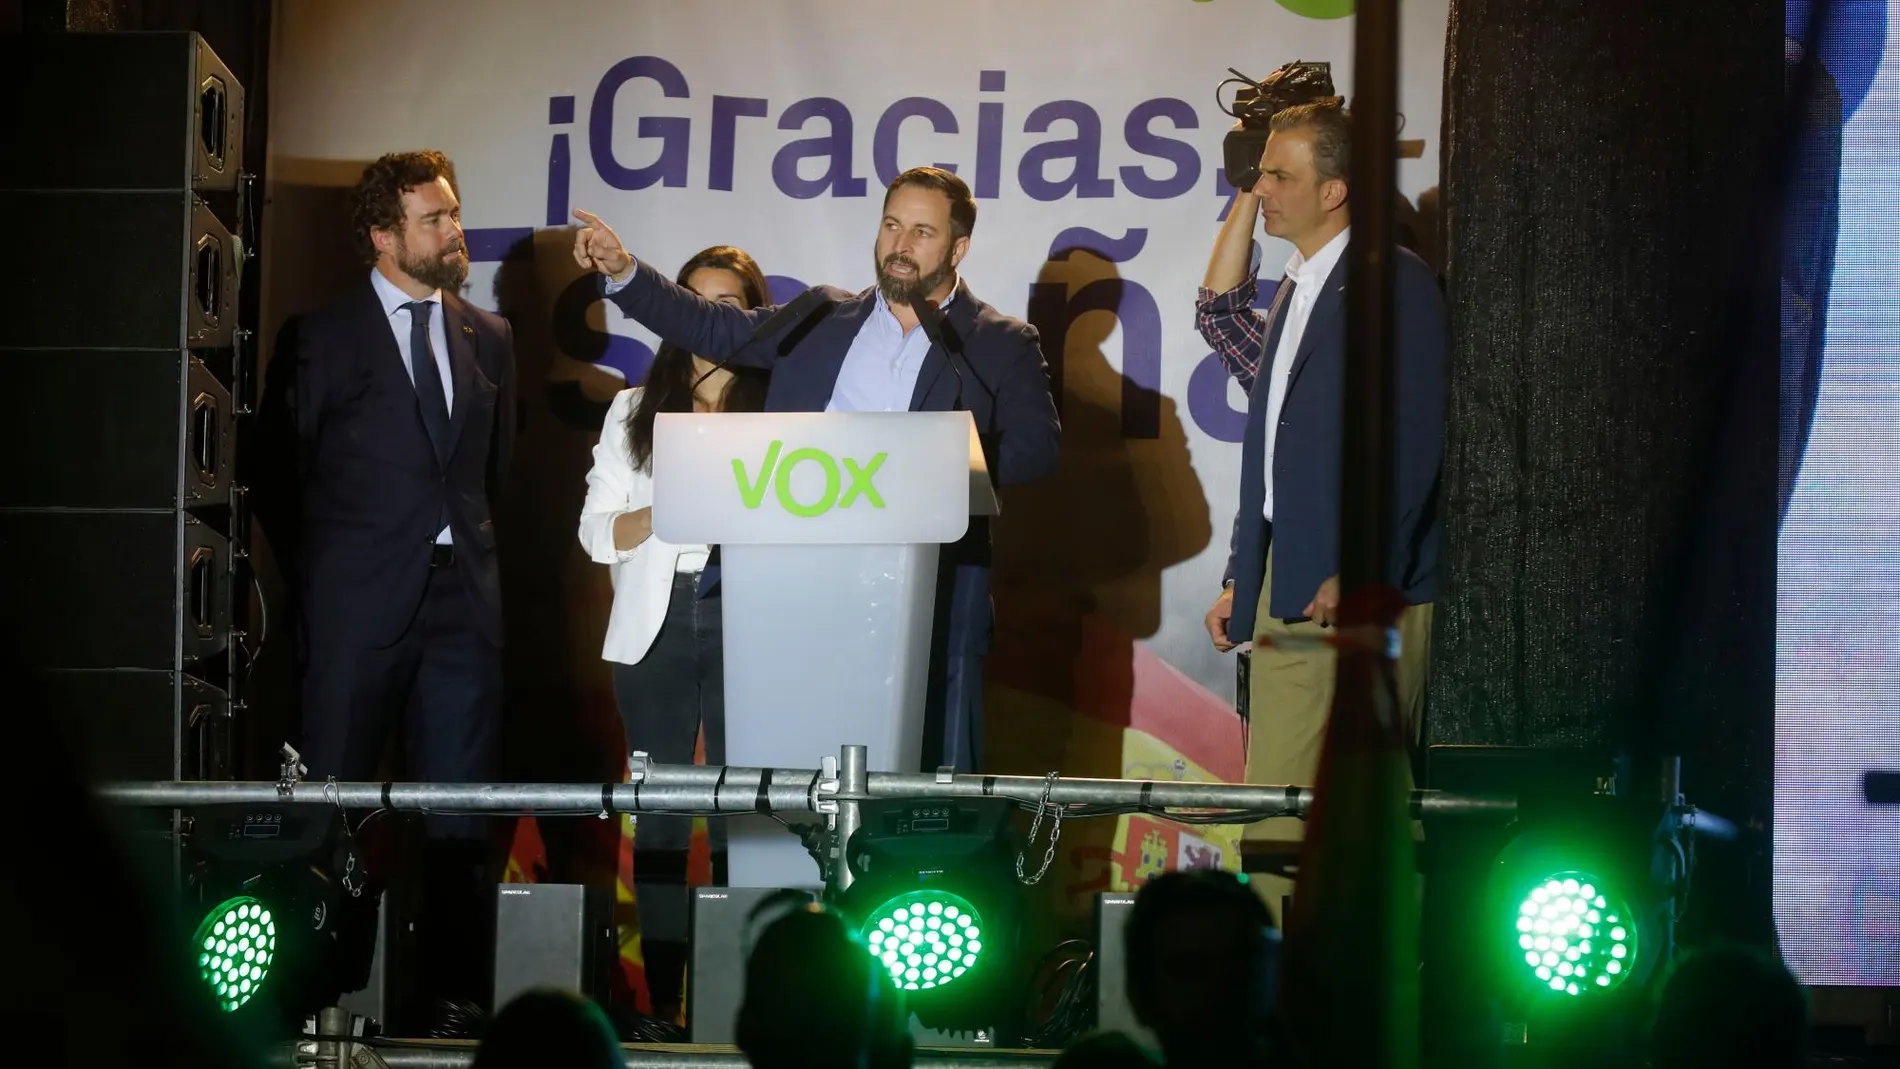 El líder de Vox, Santiago Abascal celebra sus resultados electorales en la madrileña plaza Margaret Thatcher / Foto: Jesús G. Feria